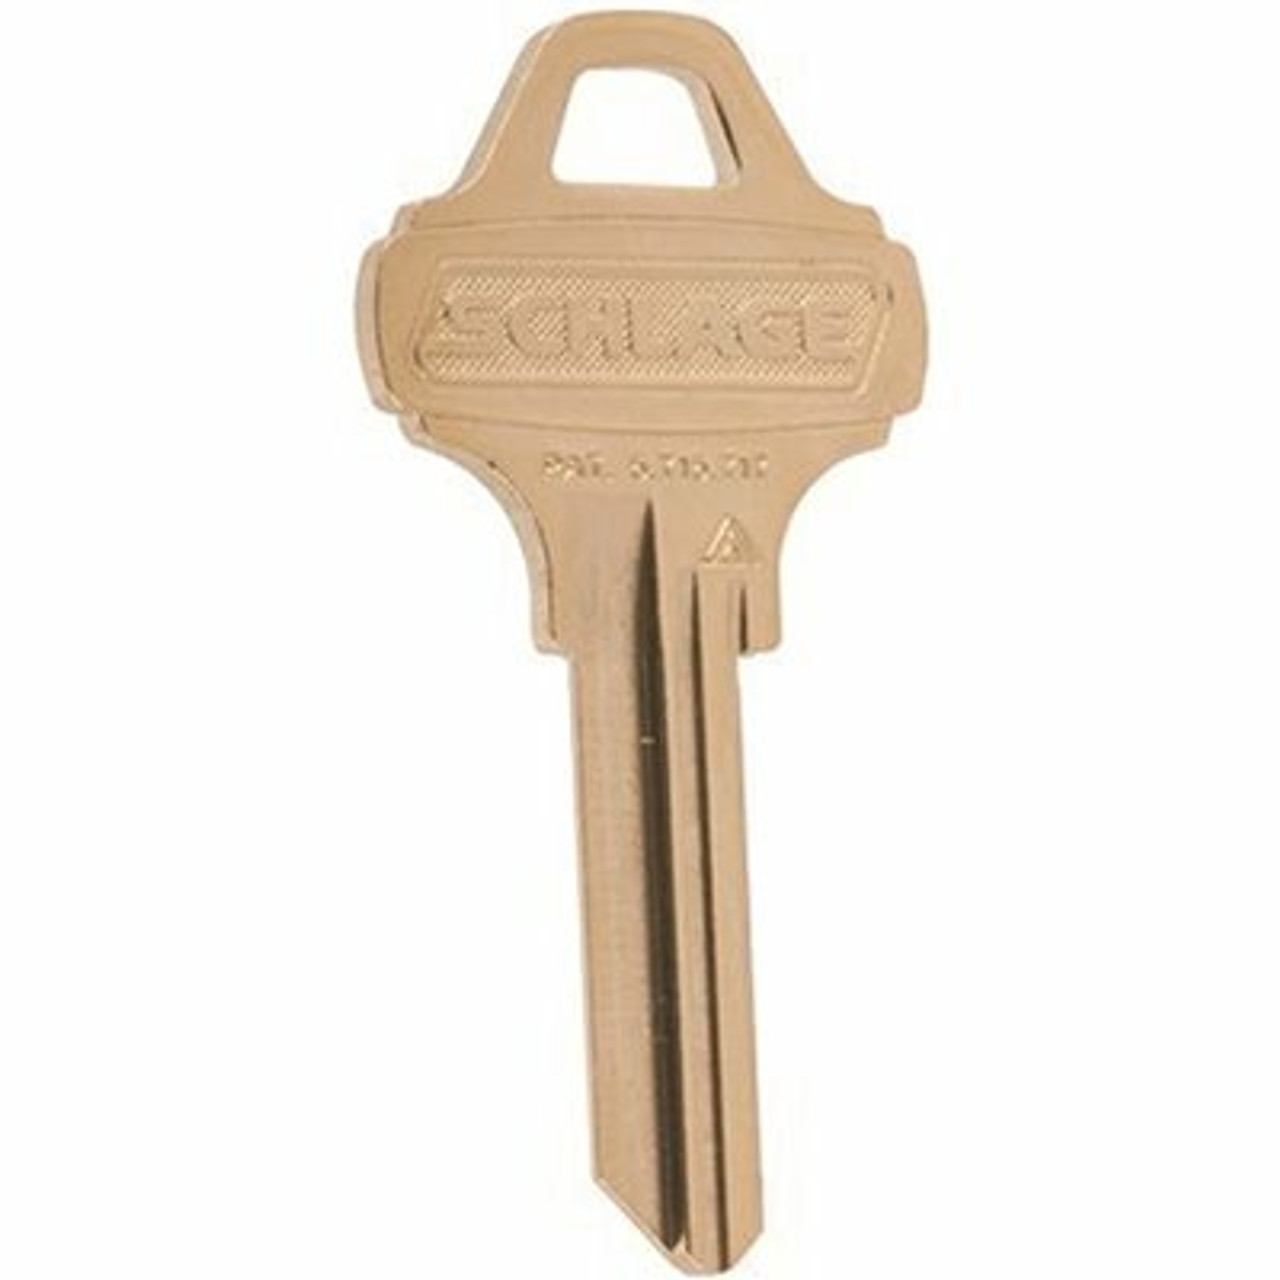 Schlage Blank 6-Pin Original Everest C123 Key